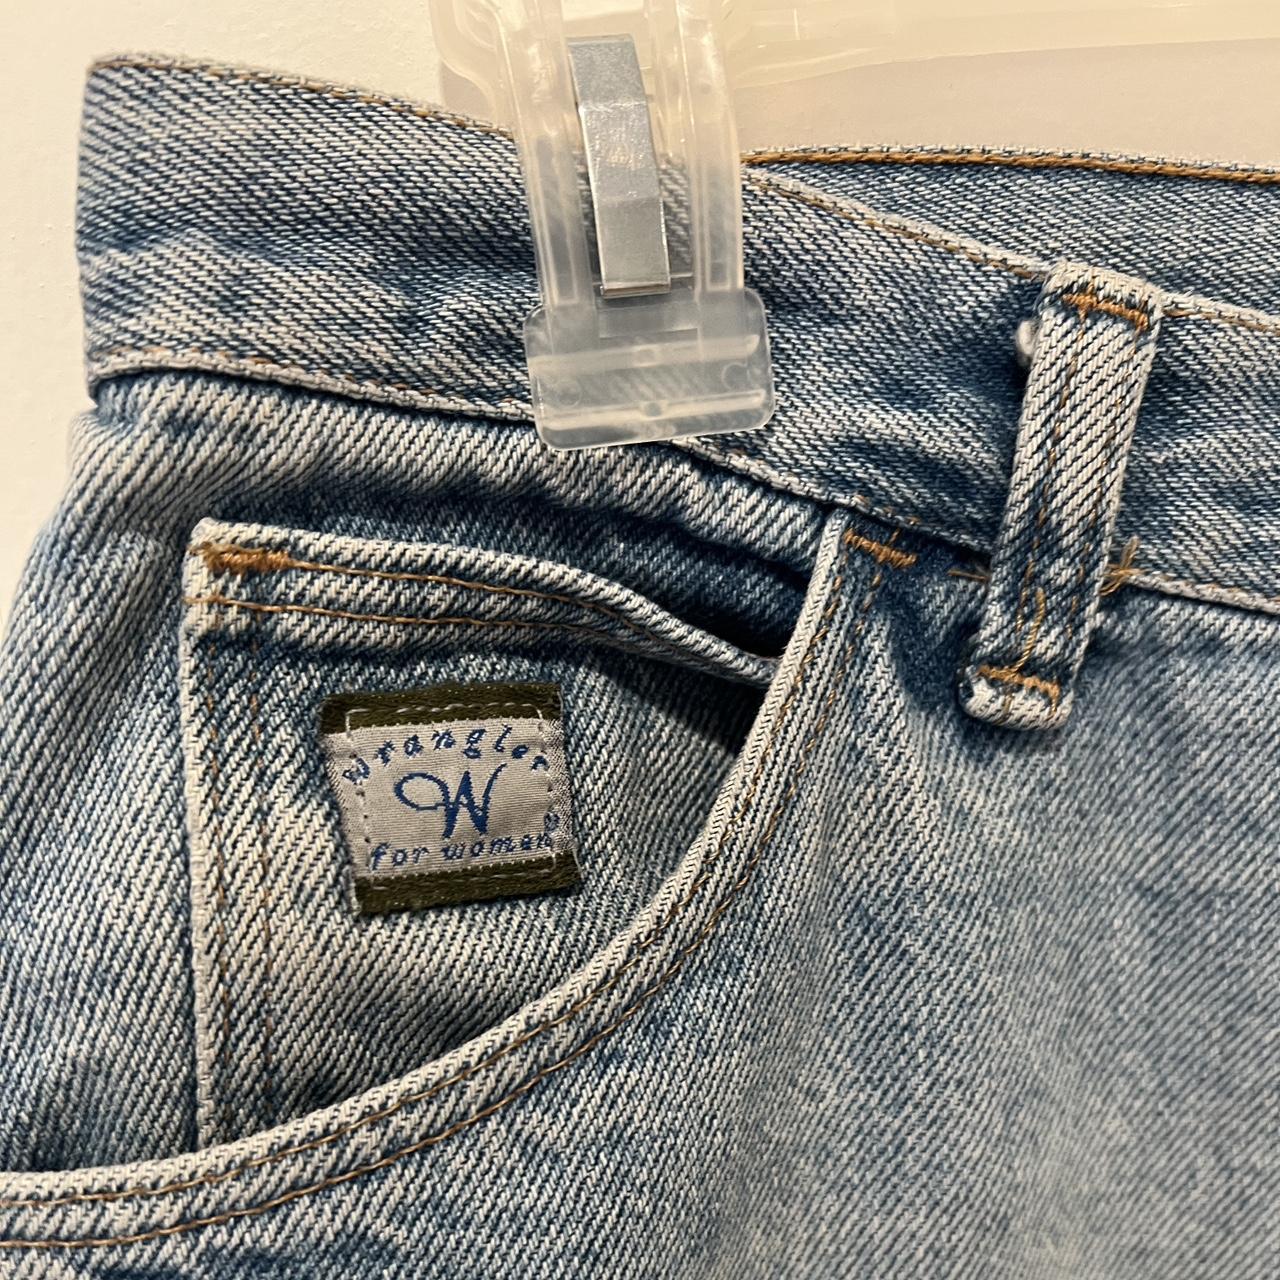 Vintage wrangler jeans — size 18 short (fit closer... - Depop